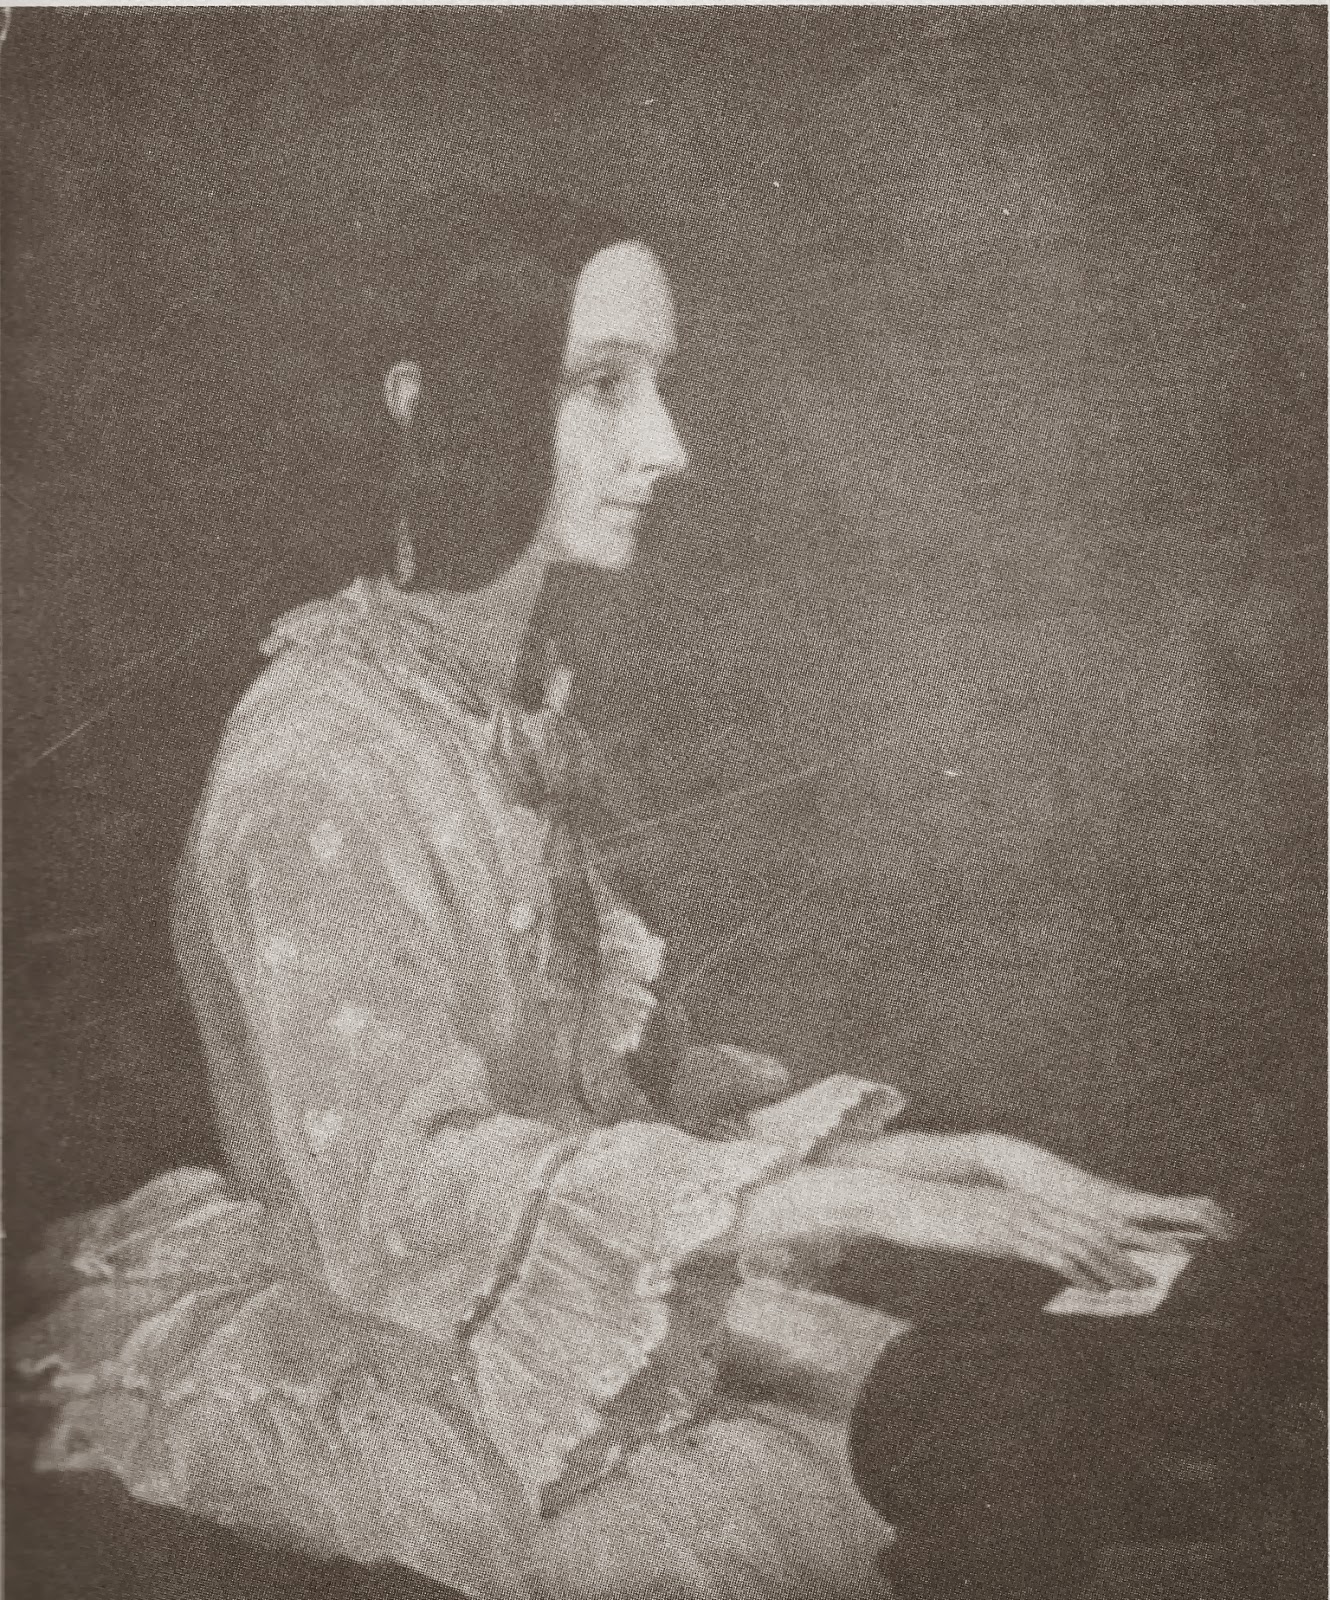 https://commons.wikimedia.org/wiki/File:Ada_Lovelace_in_1852.jpg